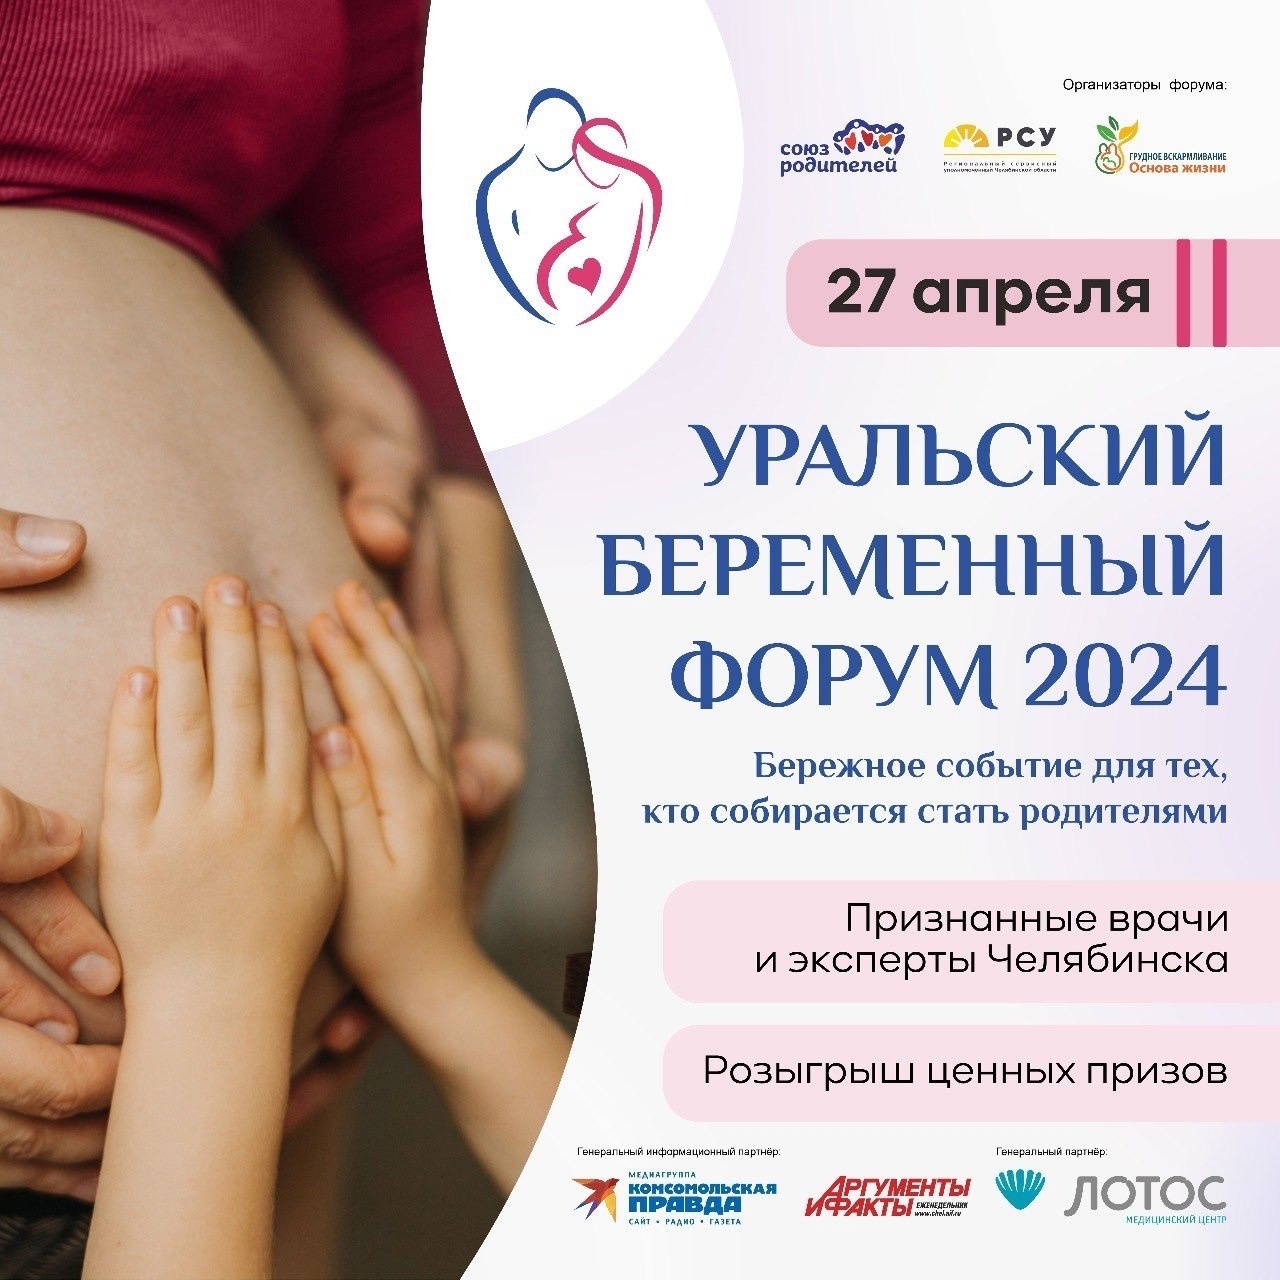 27 апреля состоится Уральский Беременный Форум - 2024